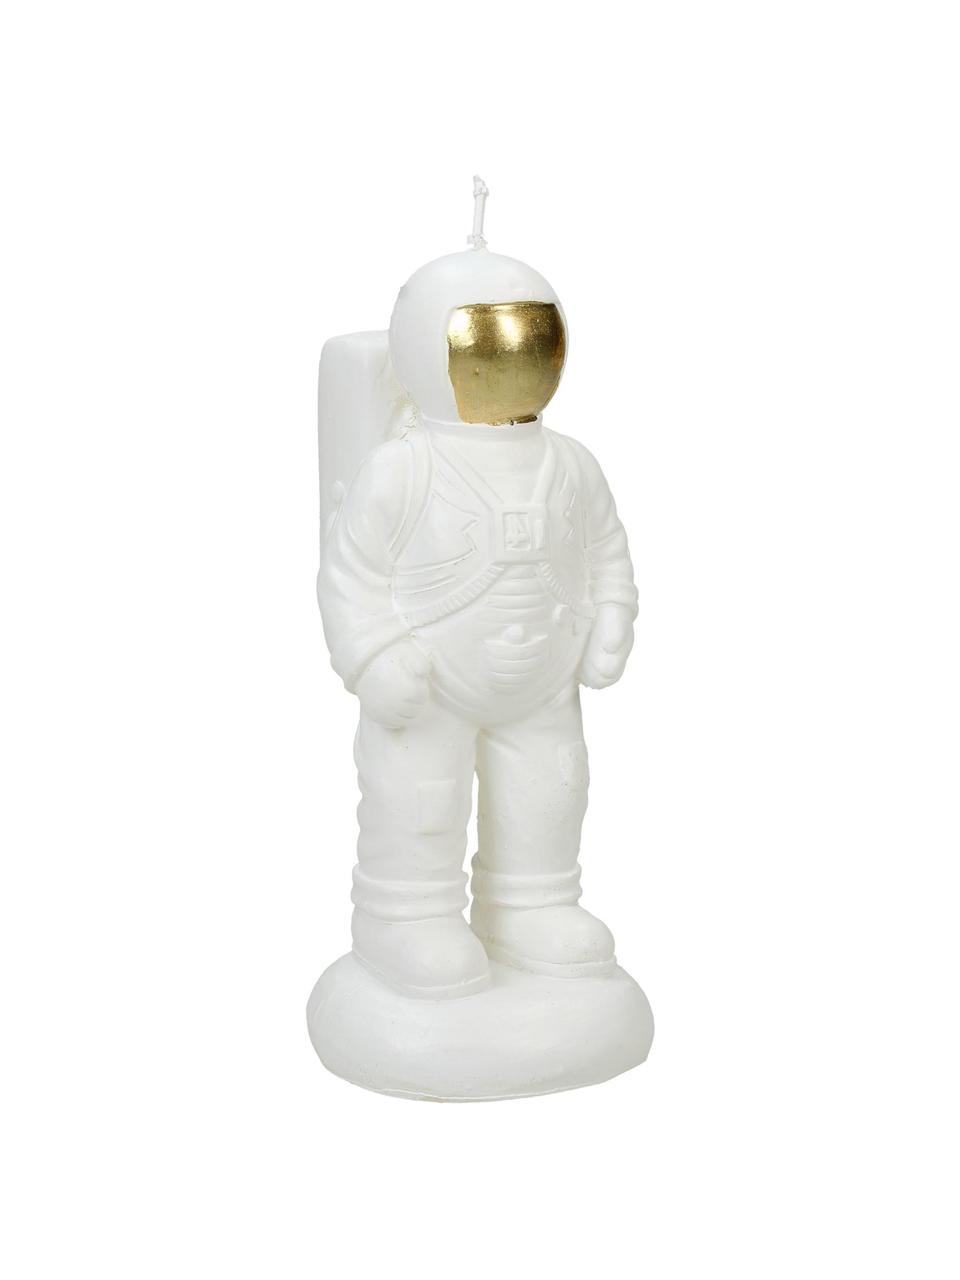 Vela Astronaut, Parafina, Blanco, An 7 x Al 14 cm